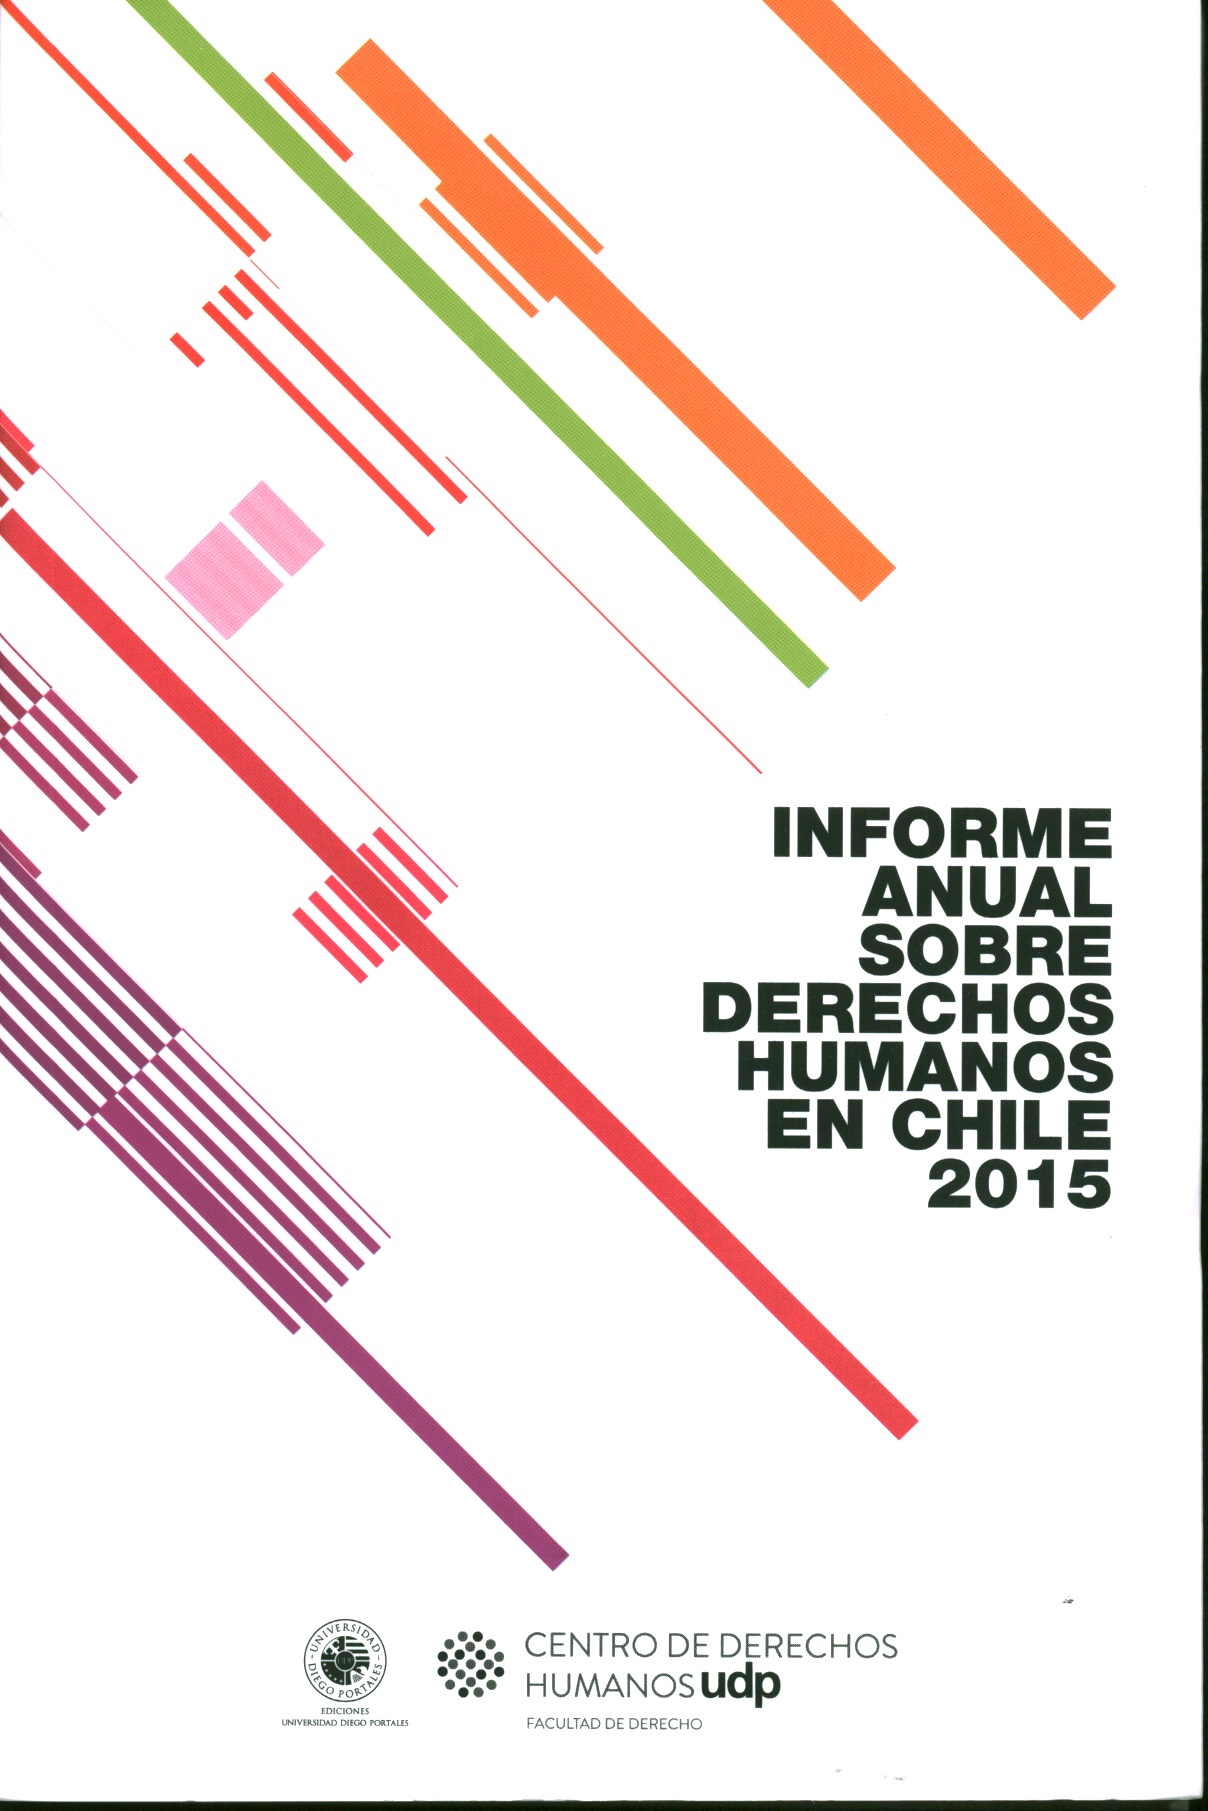 Informe anual sobre derechos humanos en Chile 2015